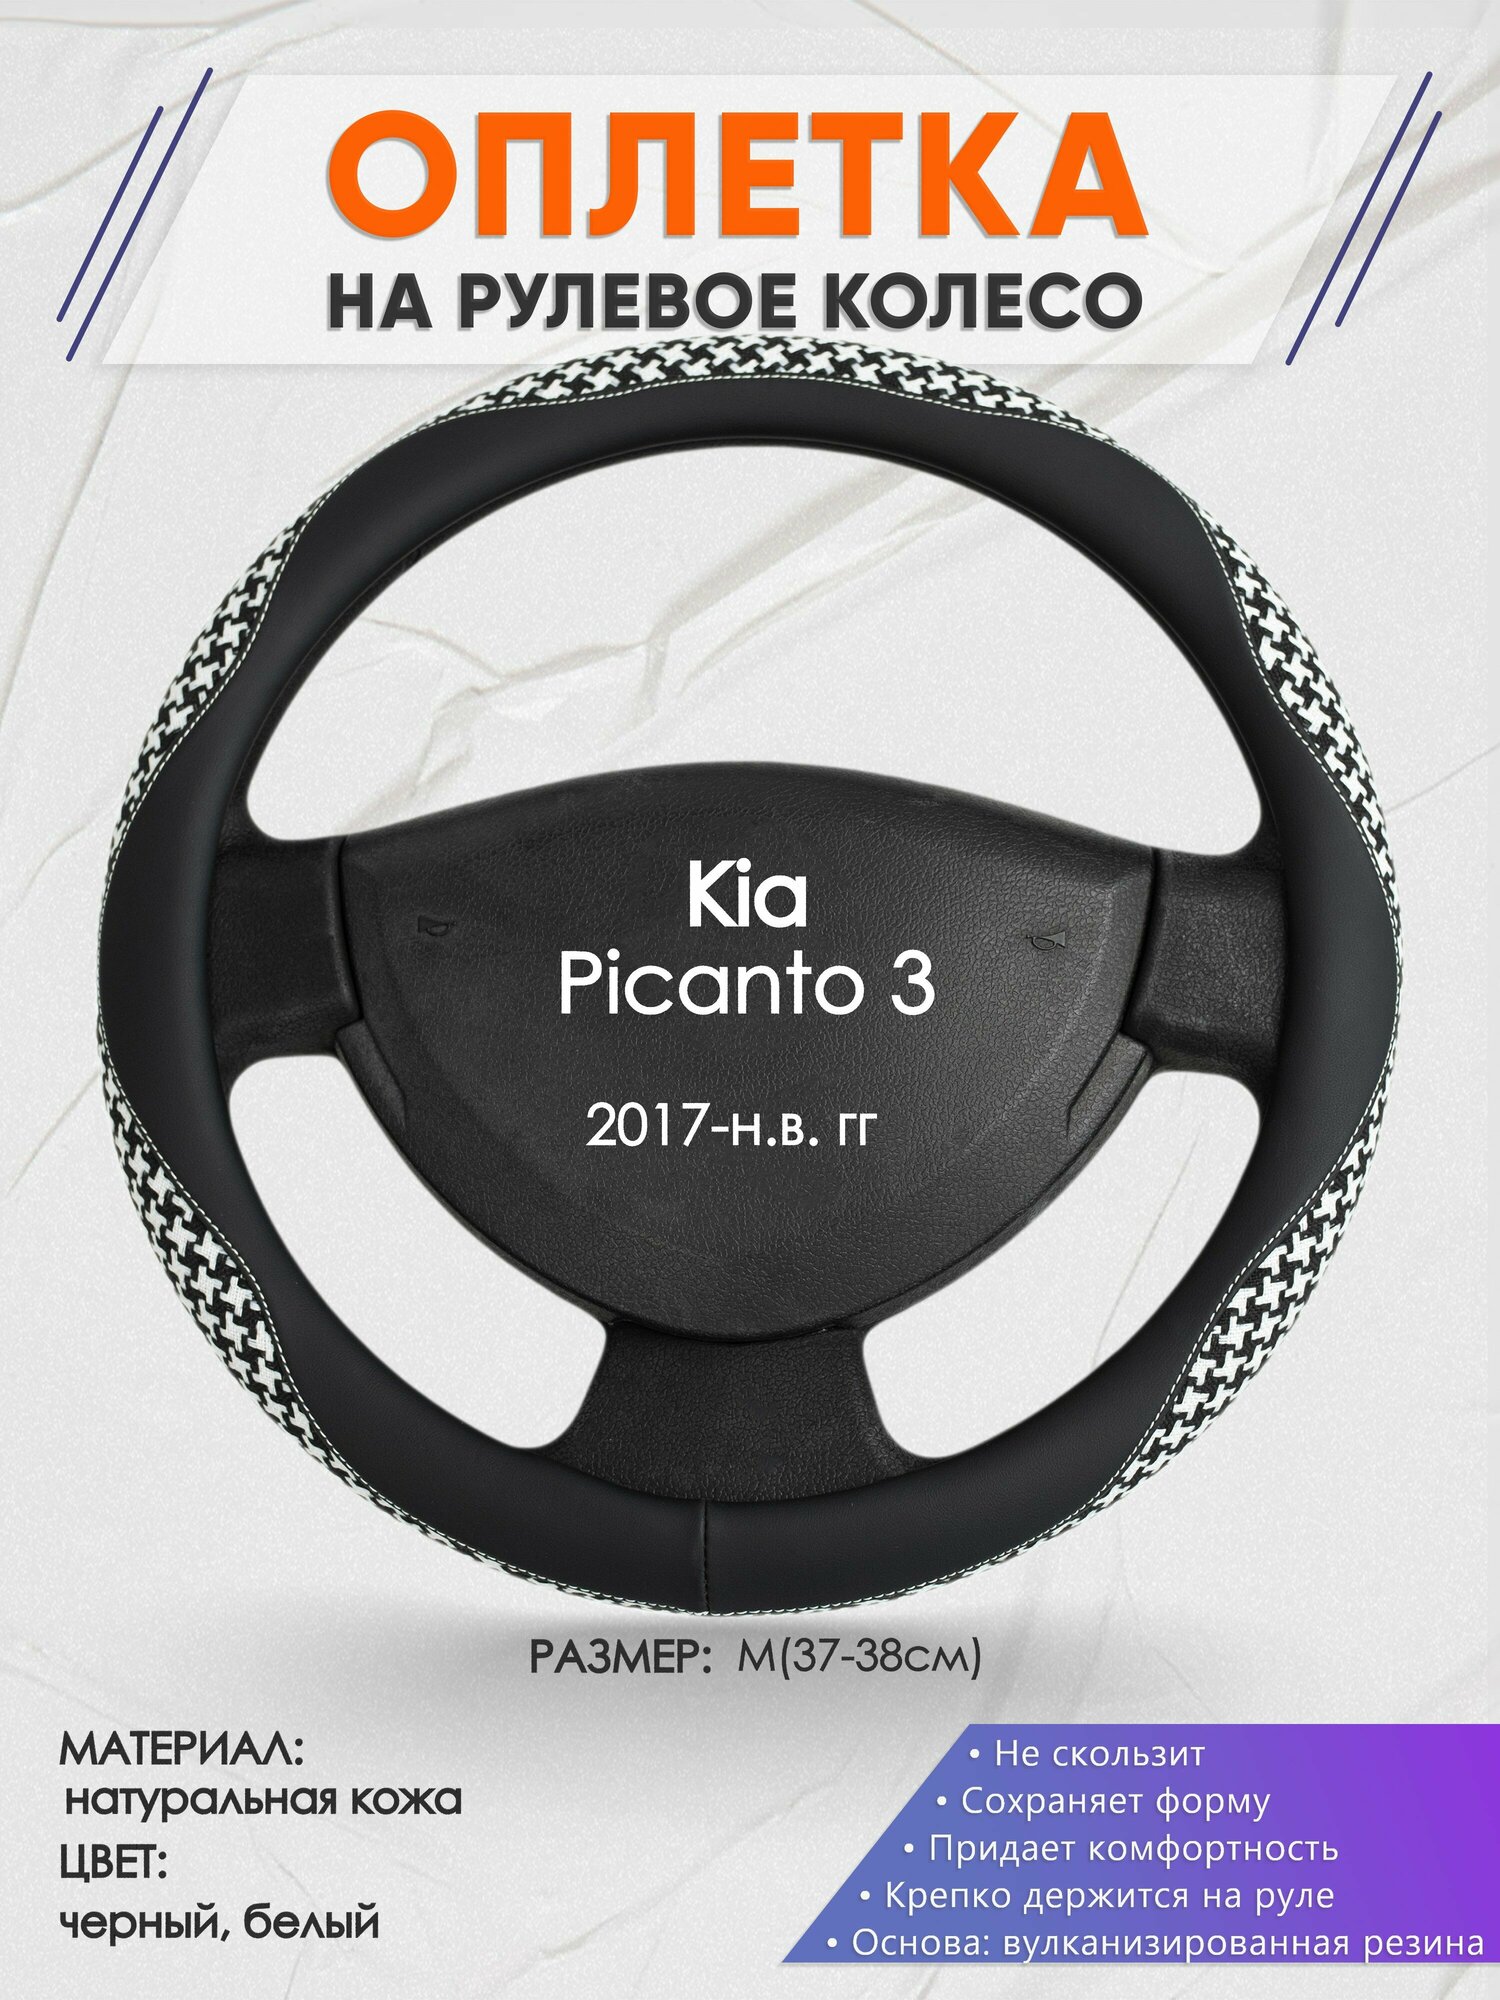 Оплетка на руль для Kia Picanto 3(Киа Пиканто 3) 2017-н. в, M(37-38см), Натуральная кожа 21